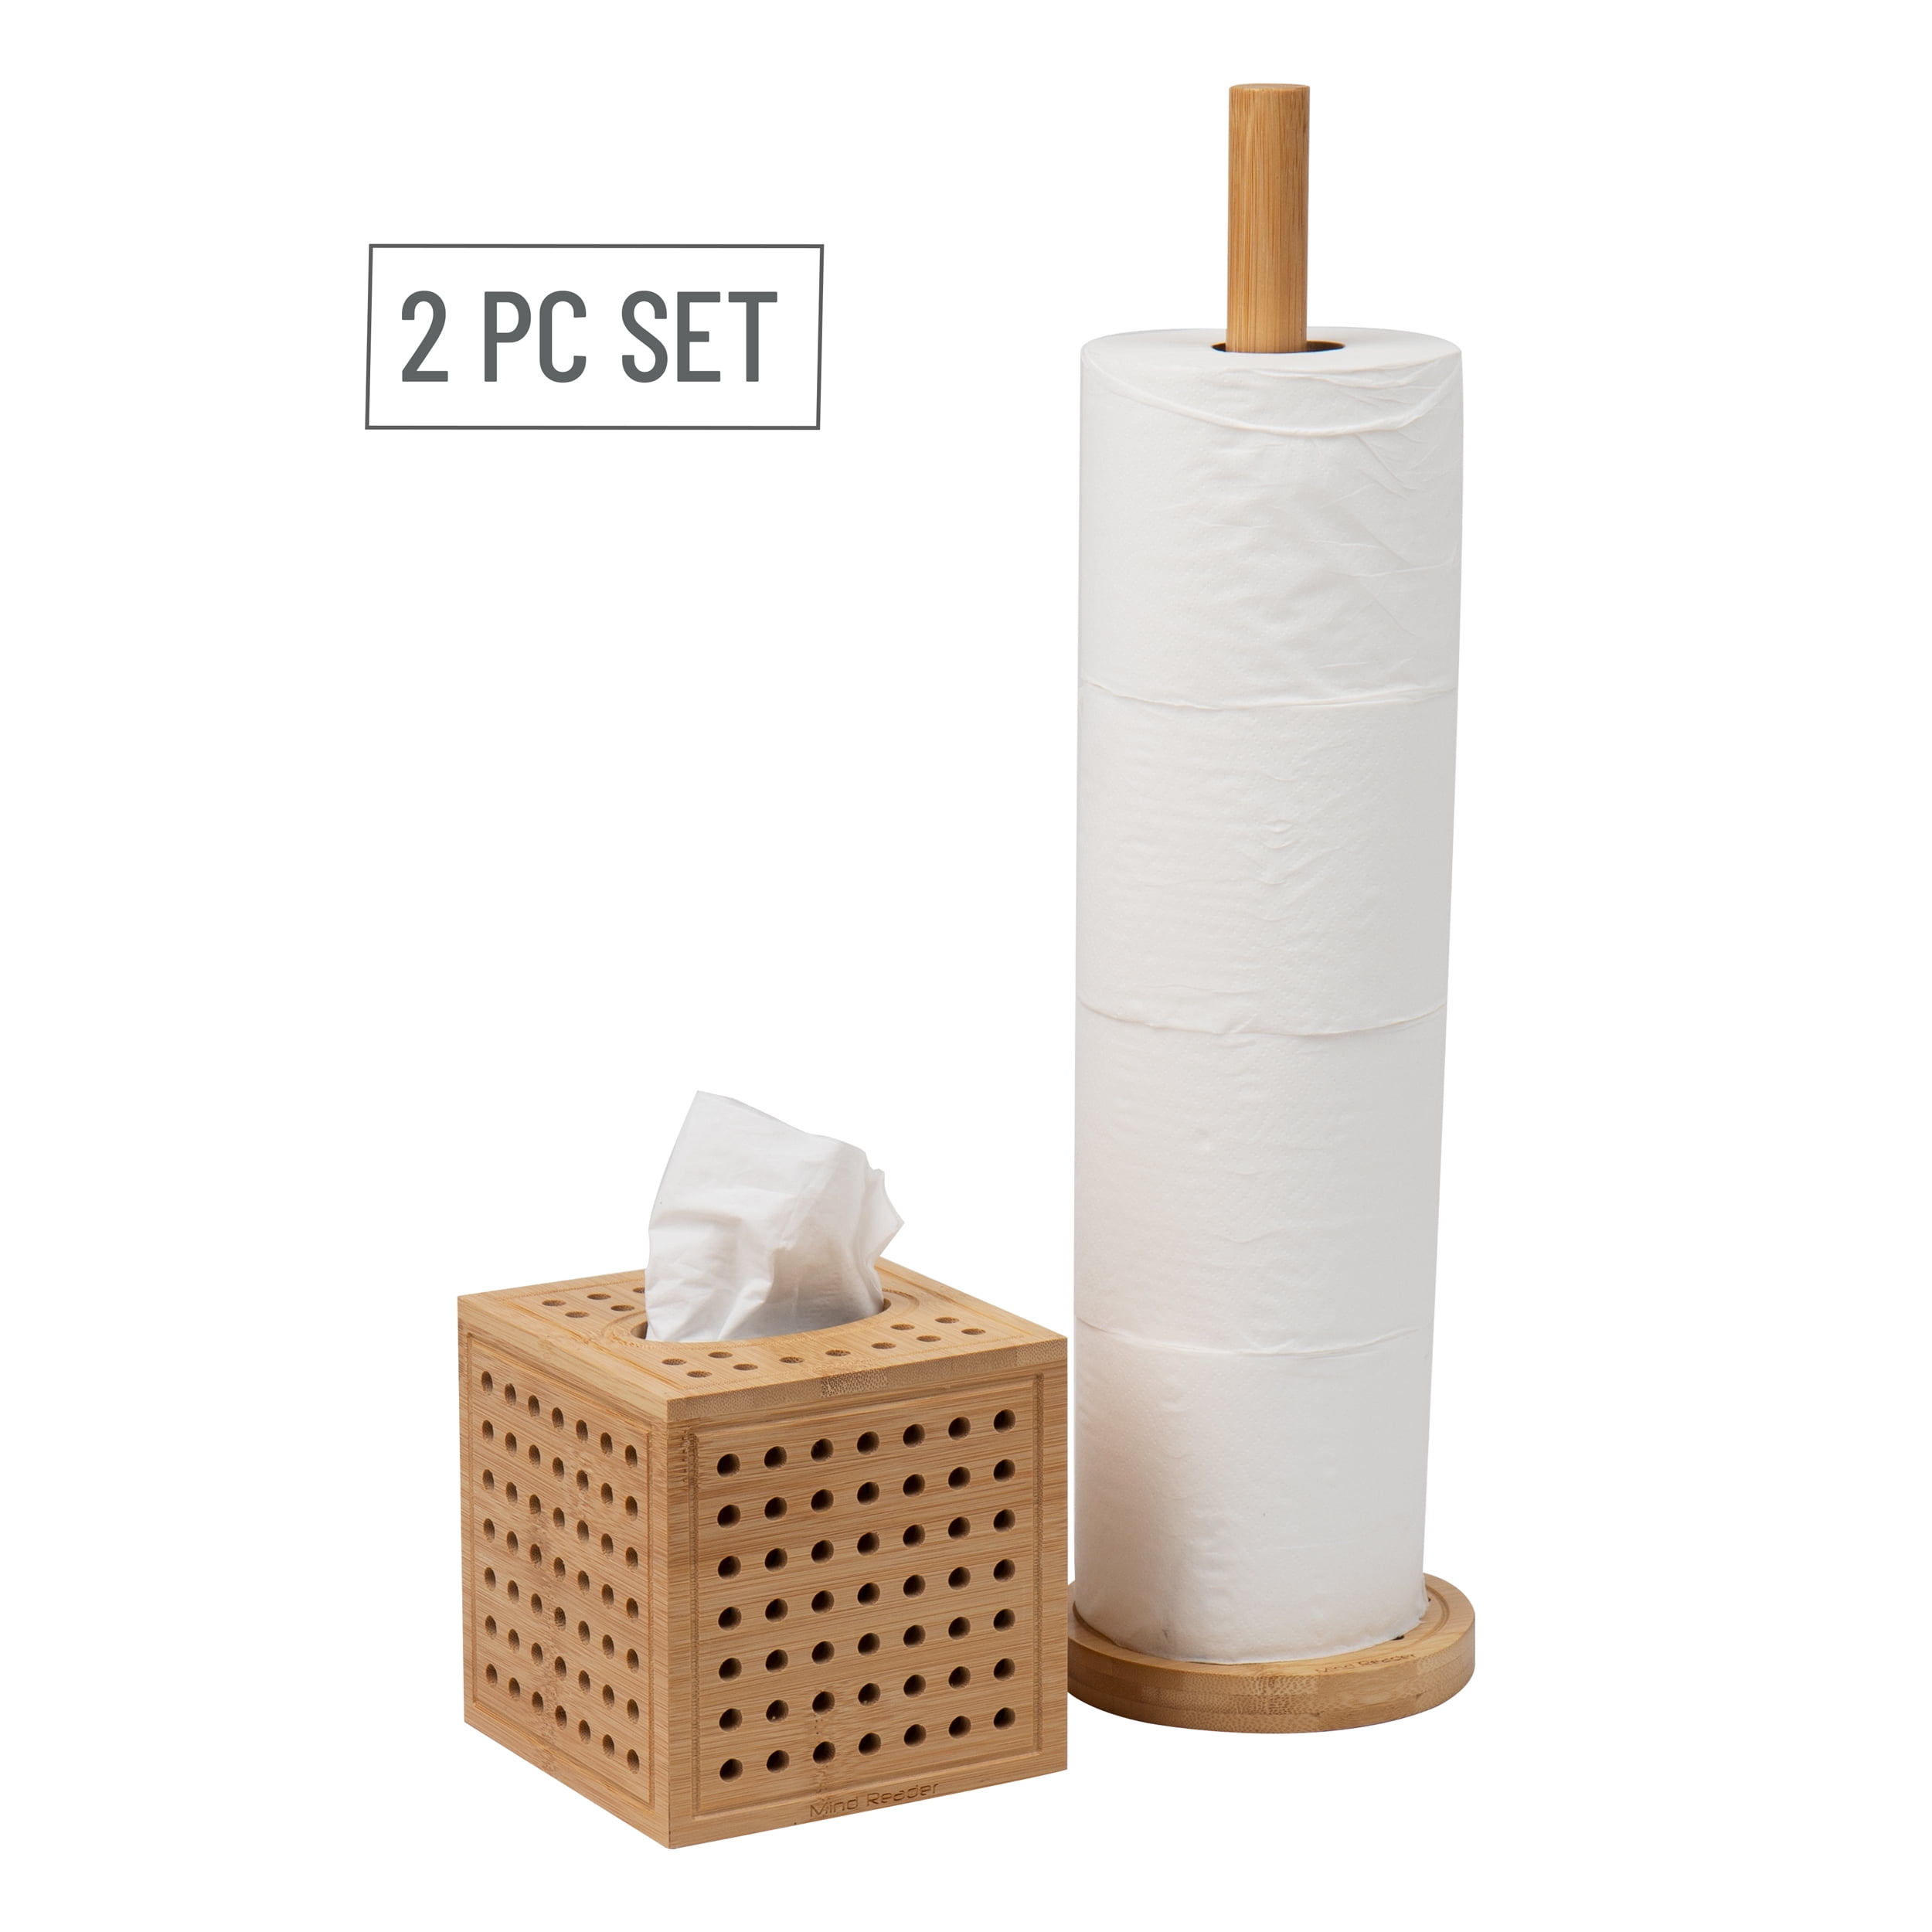 Napkin & Paper Towel Holders: Sold at WebstaurantStore